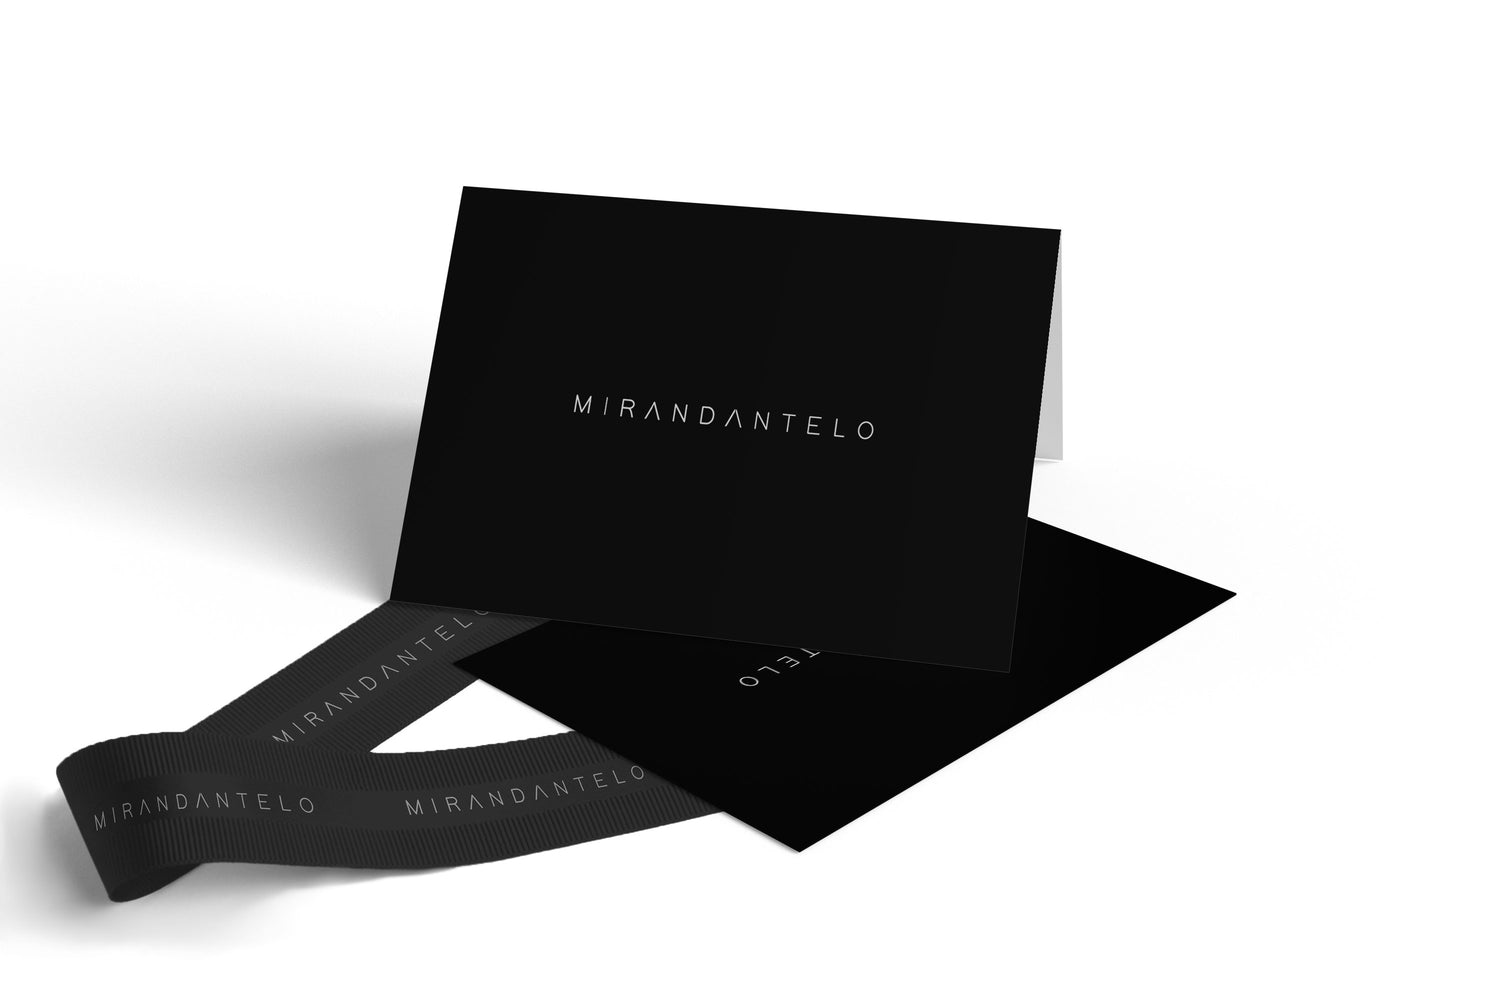 Tarjeta de regalo negra con logo Mirandantelo impreso en blanco.